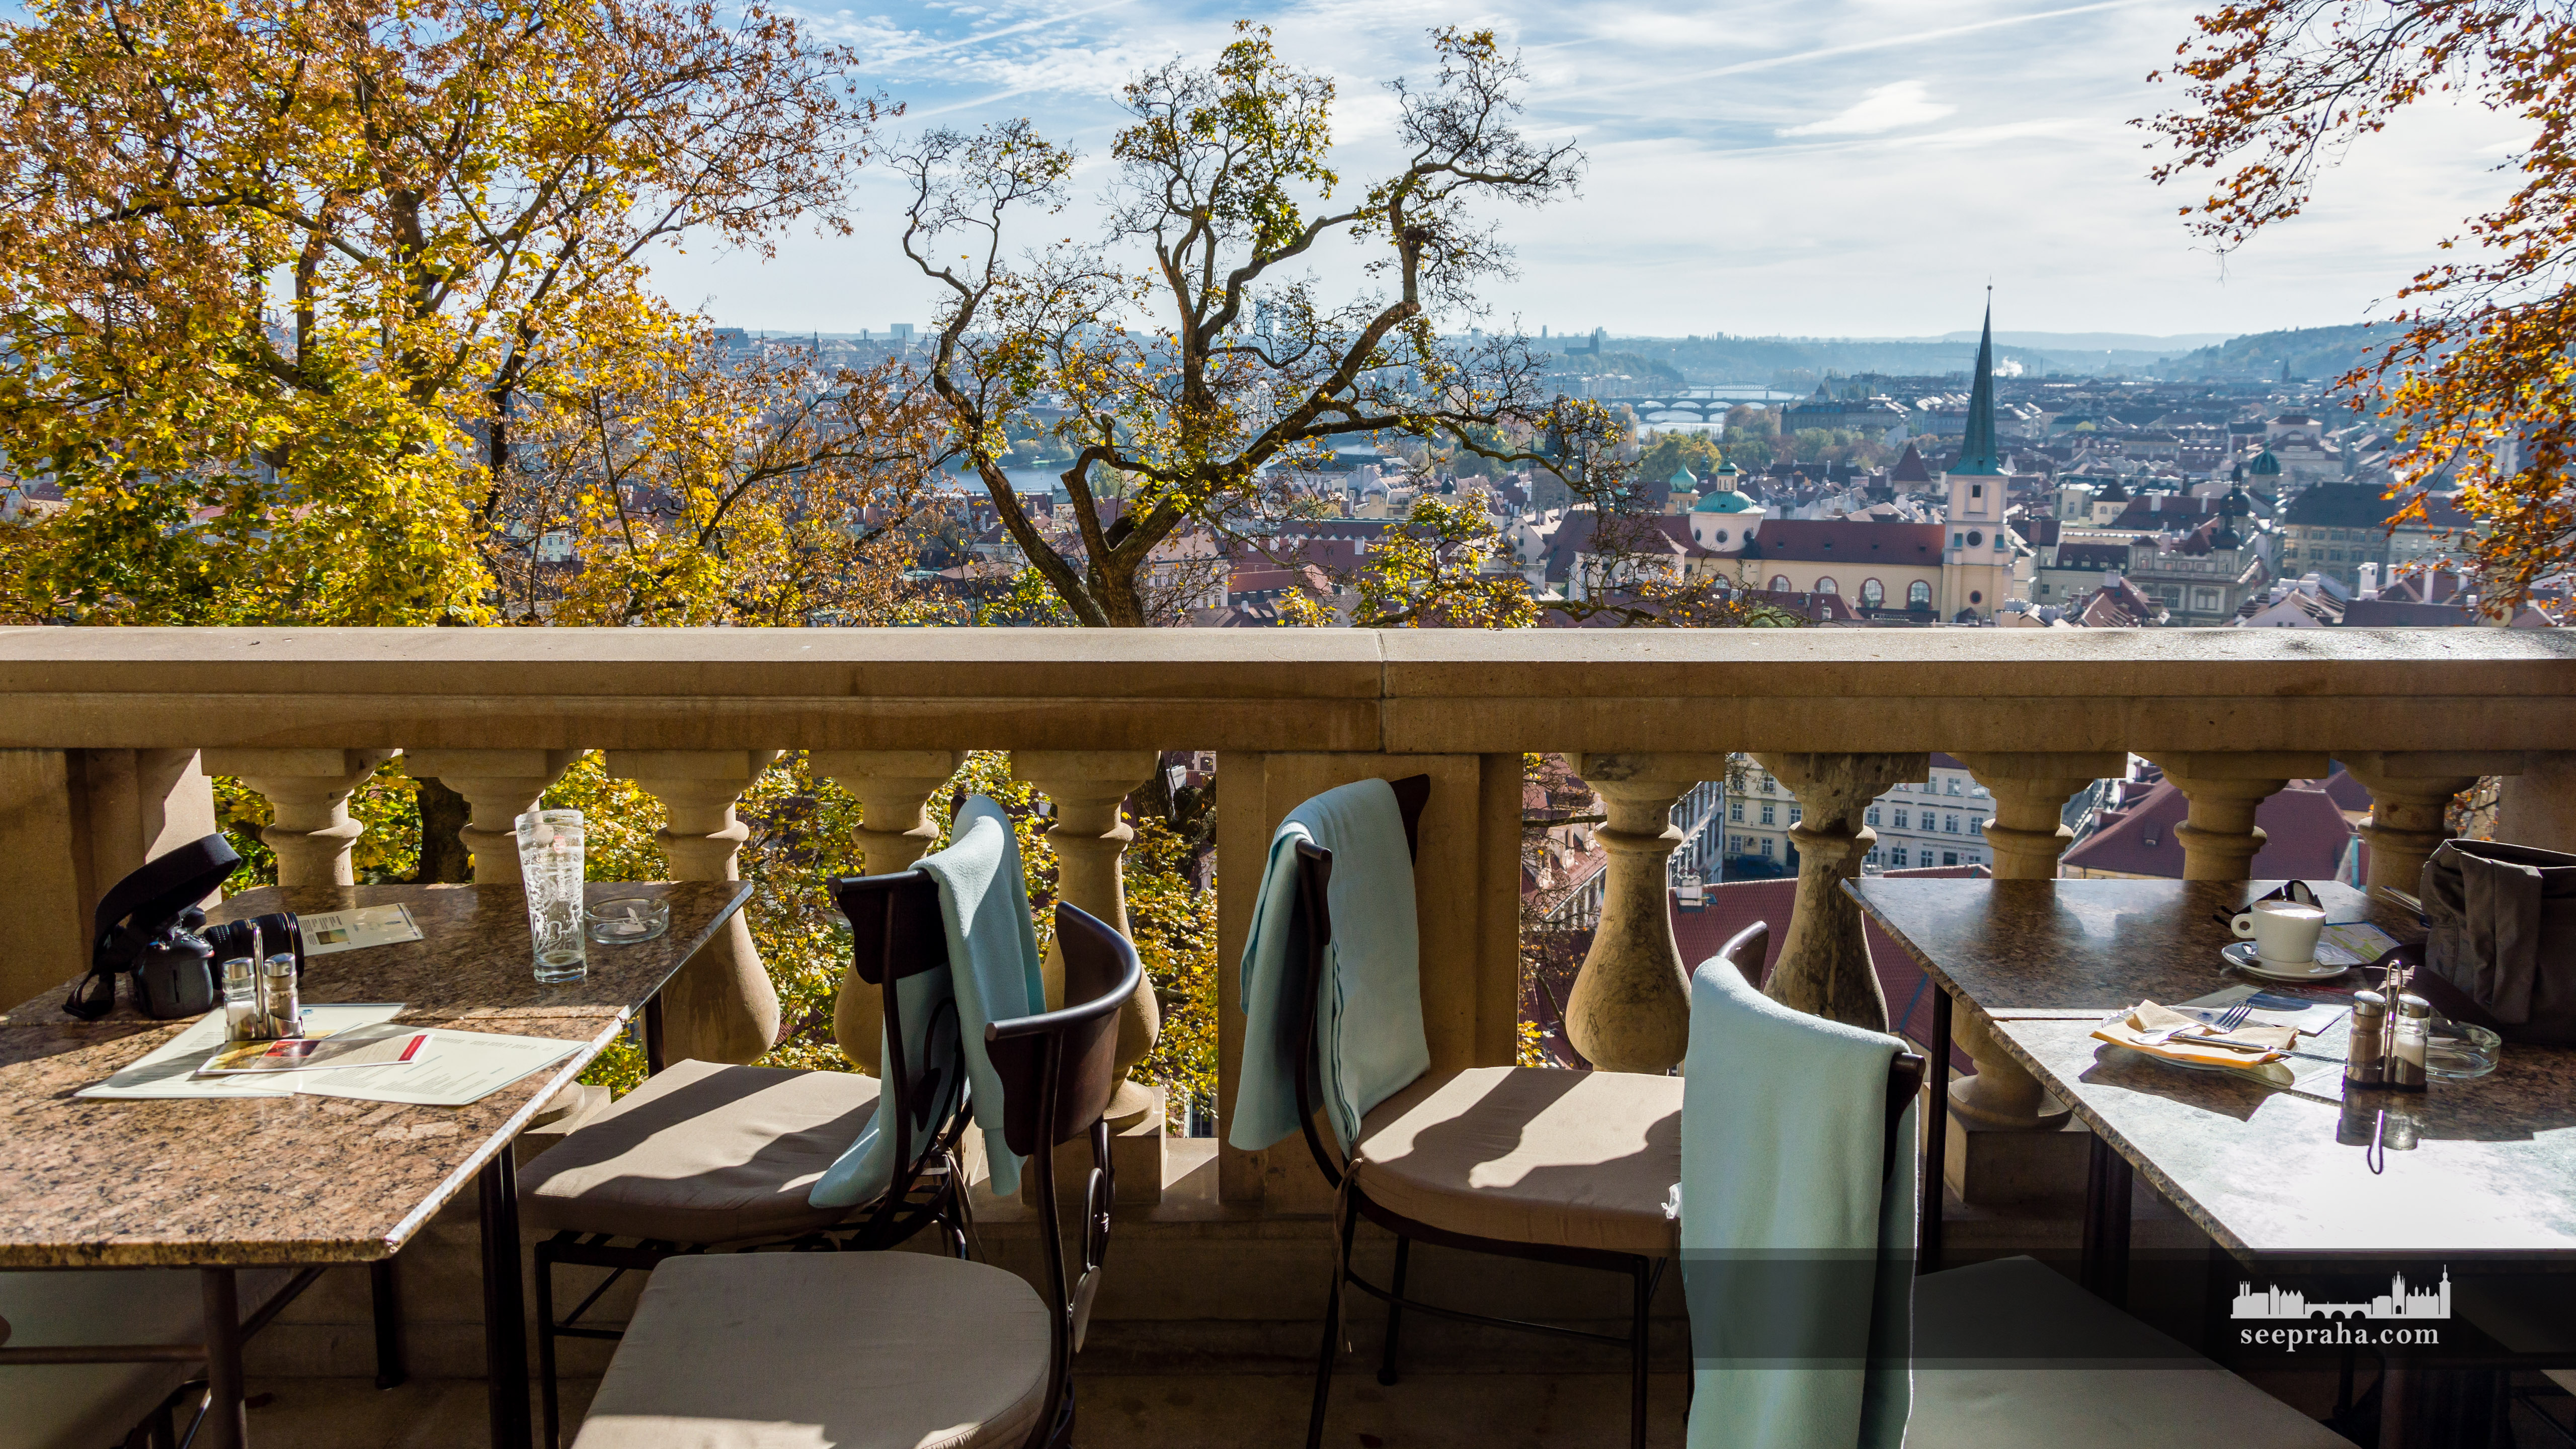 Terrasse auf Lobkowitz Palast Café, Prag, Tschechien